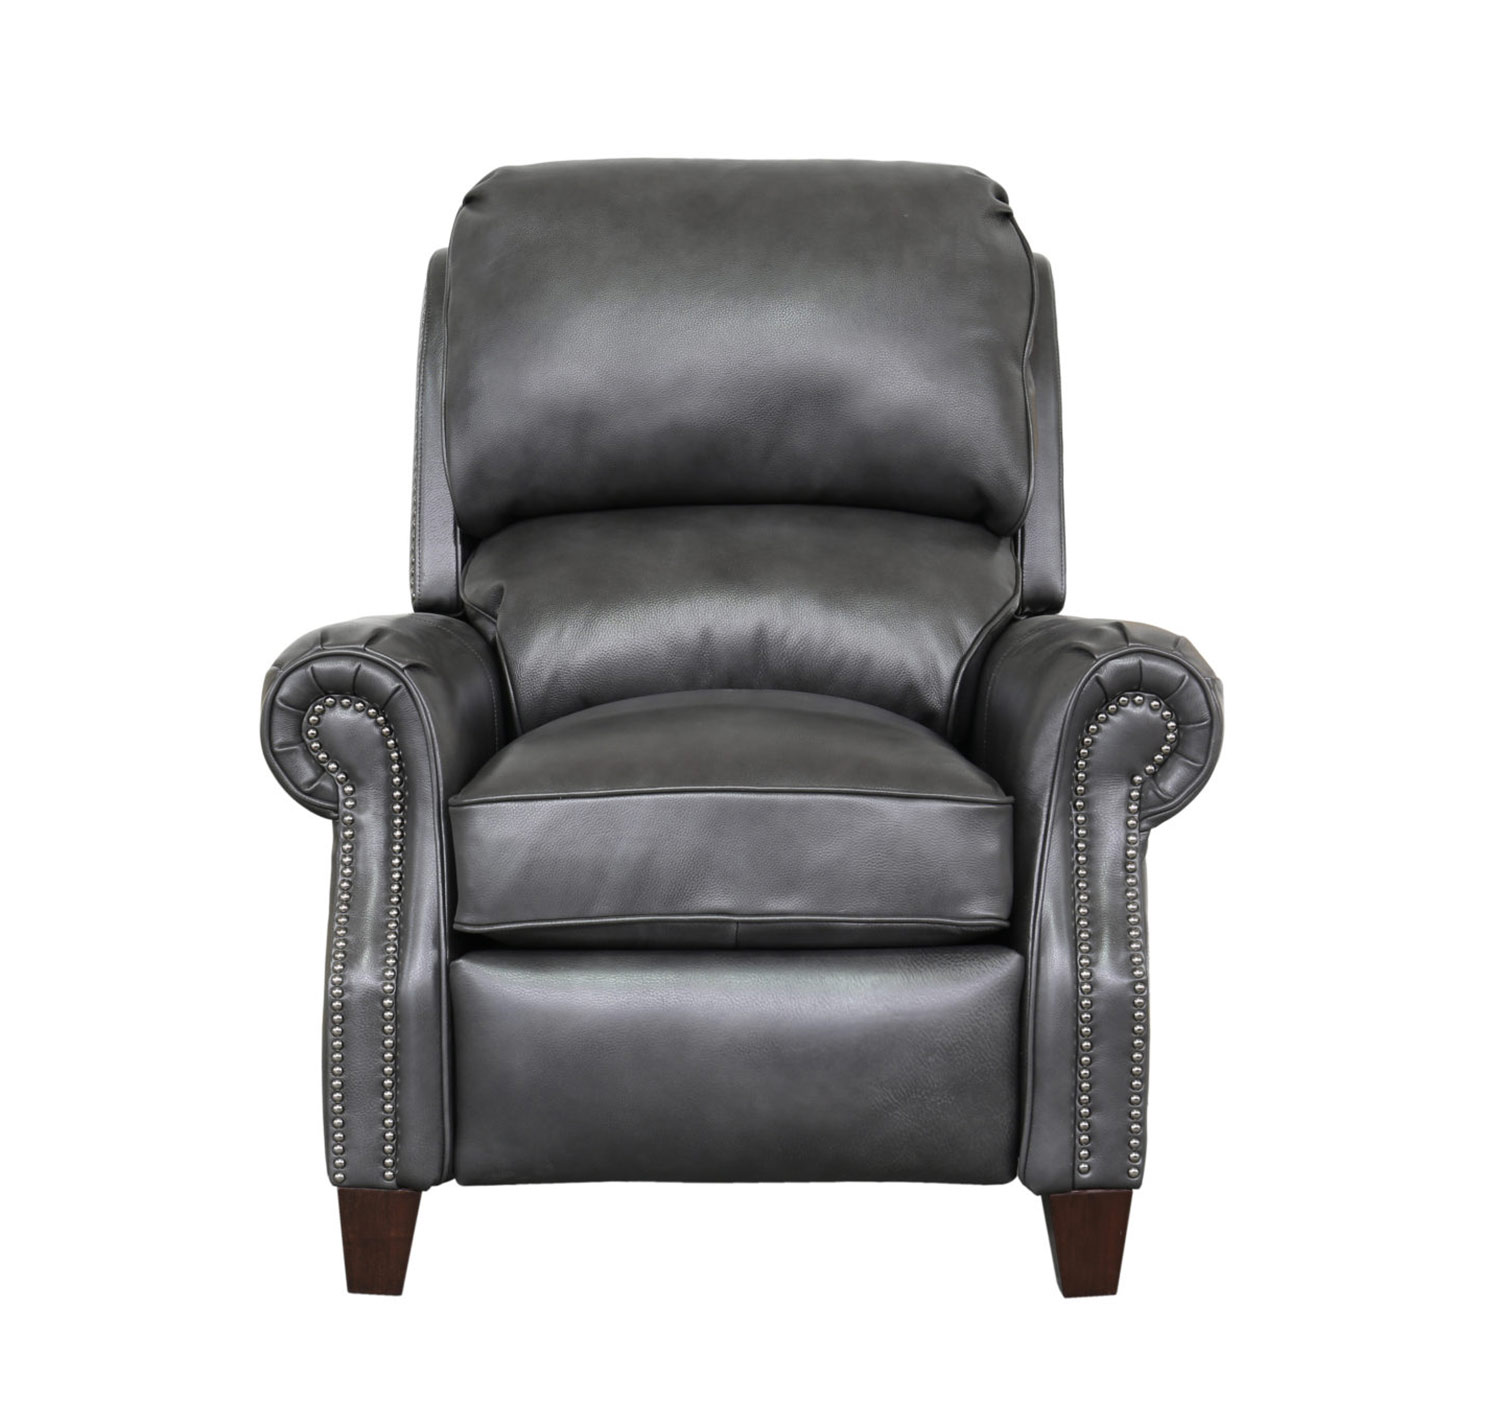 Barcalounger Churchill Recliner Chair - Wrenn Gray/all leather